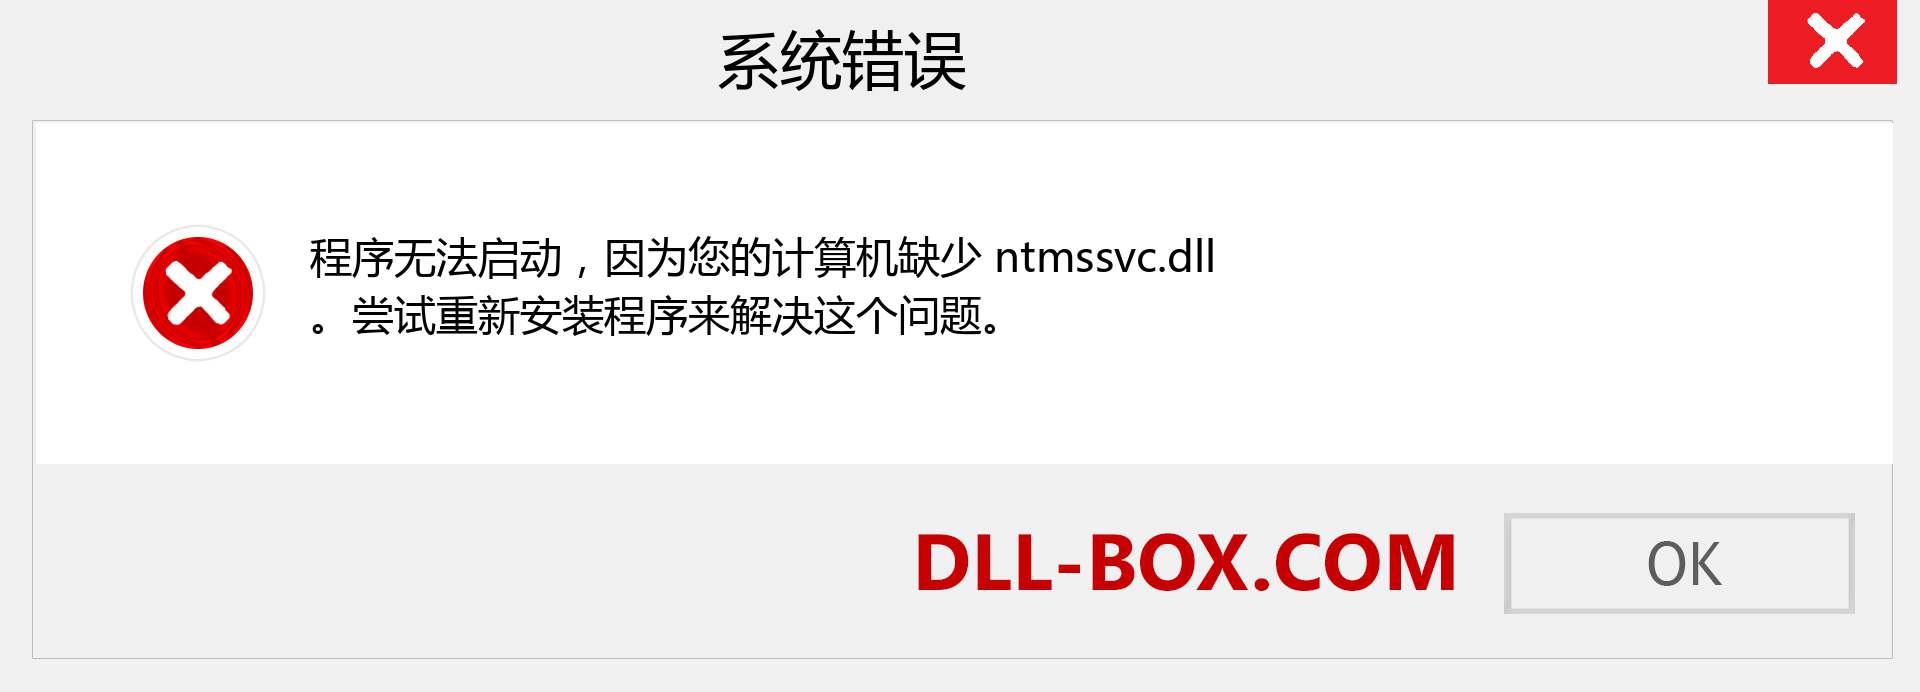 ntmssvc.dll 文件丢失？。 适用于 Windows 7、8、10 的下载 - 修复 Windows、照片、图像上的 ntmssvc dll 丢失错误